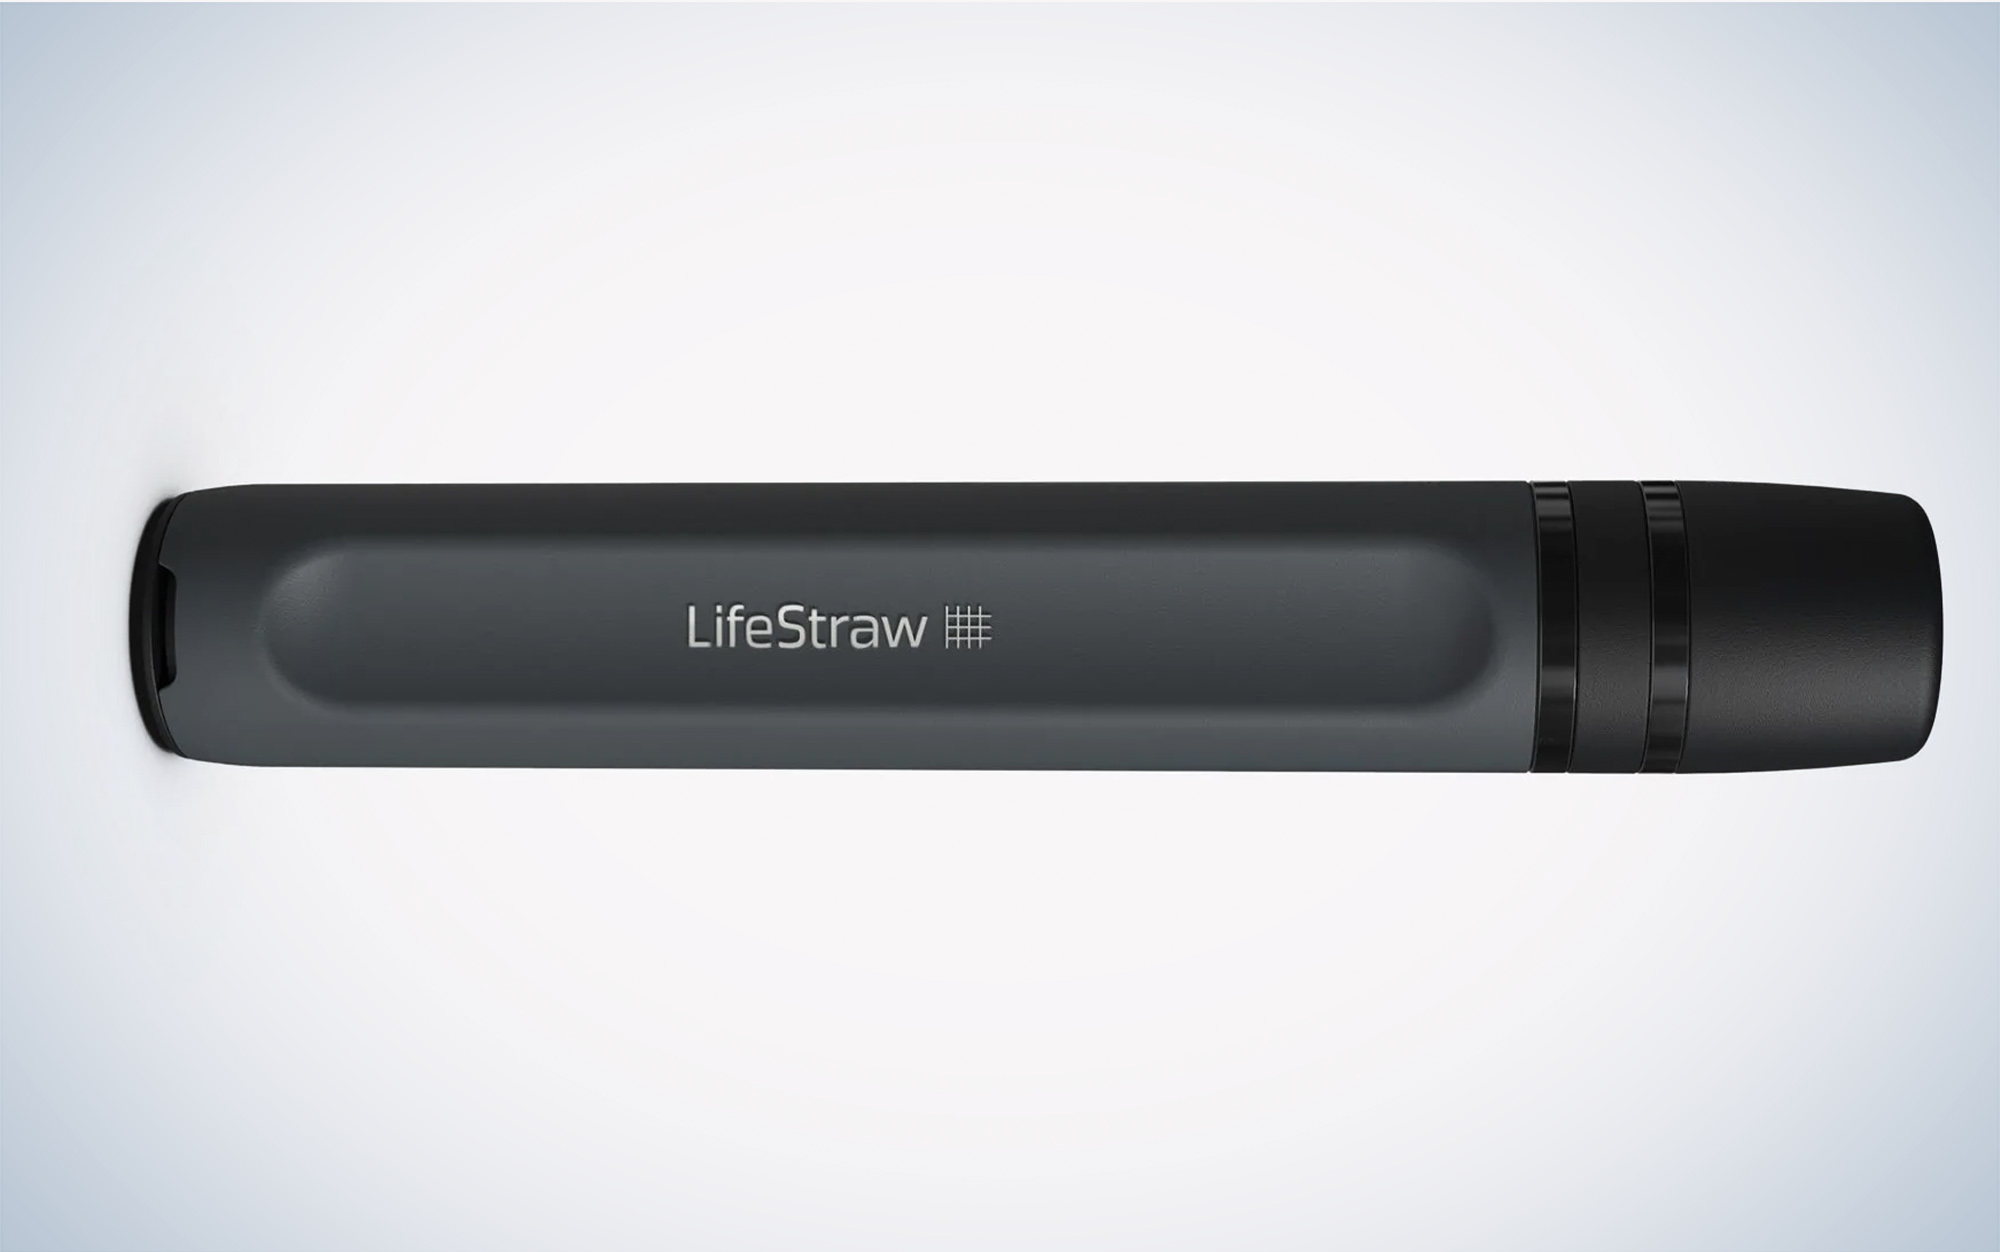 The LifeStraw Peak Series is on sale.